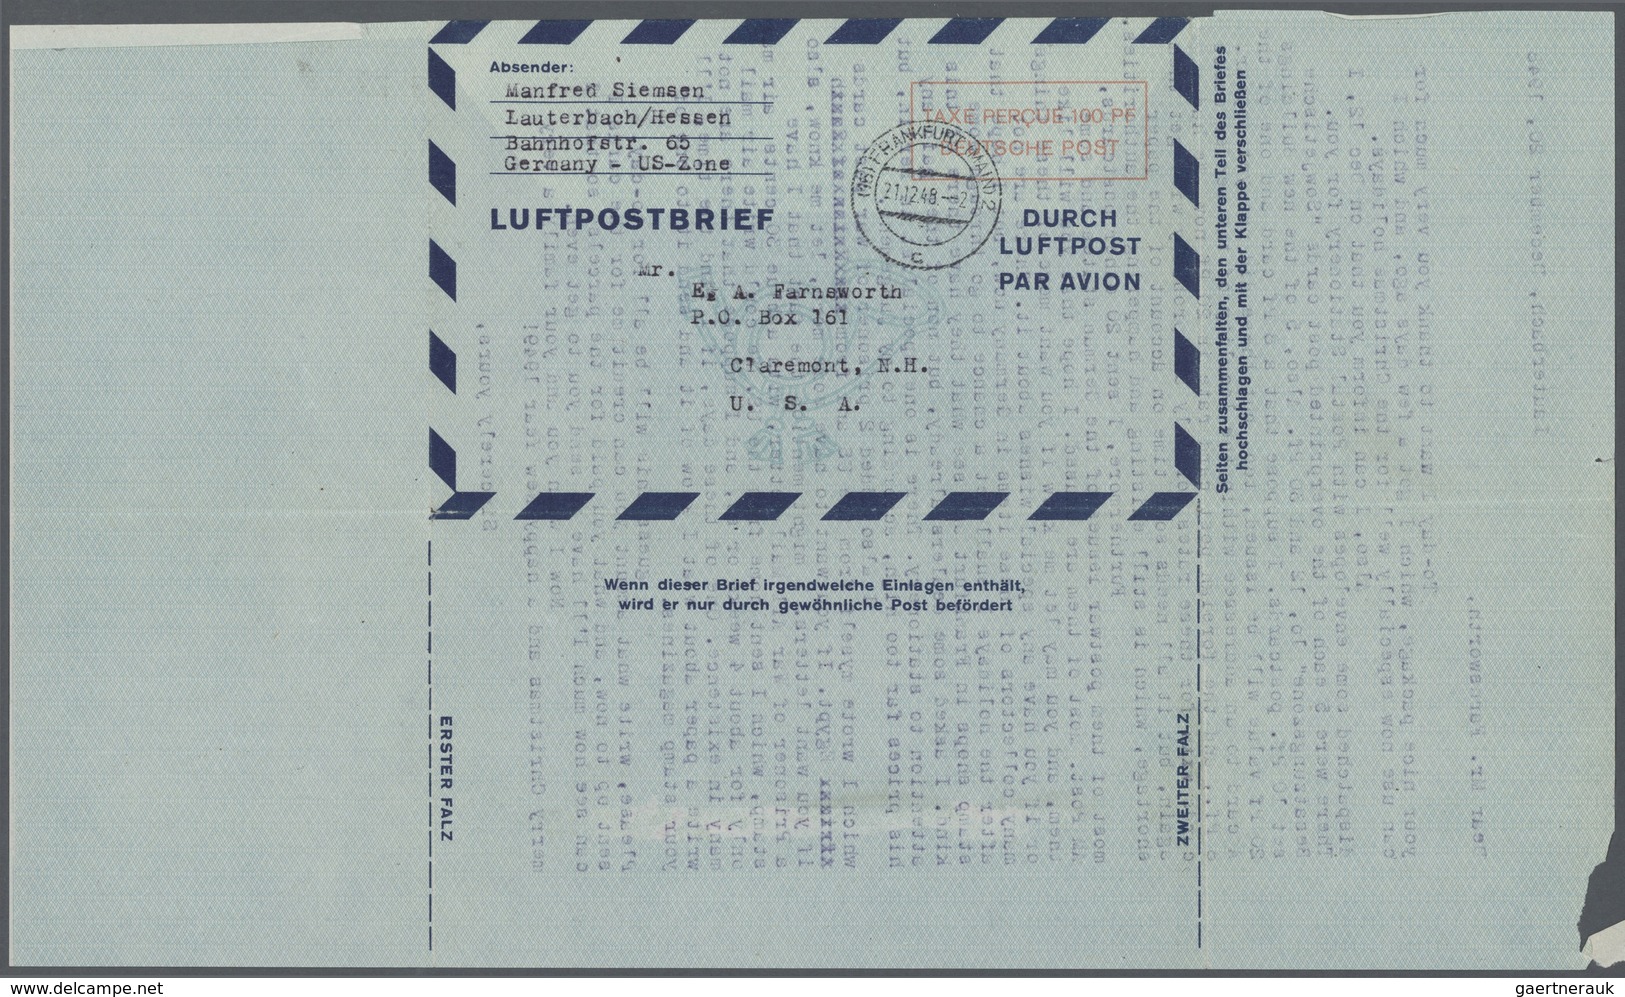 Bundesrepublik und Berlin: Ab 1948. Spezialsammlung LUFTPOST-FALTBRIEFE Berlin/Bizone/Bund. Extrem d